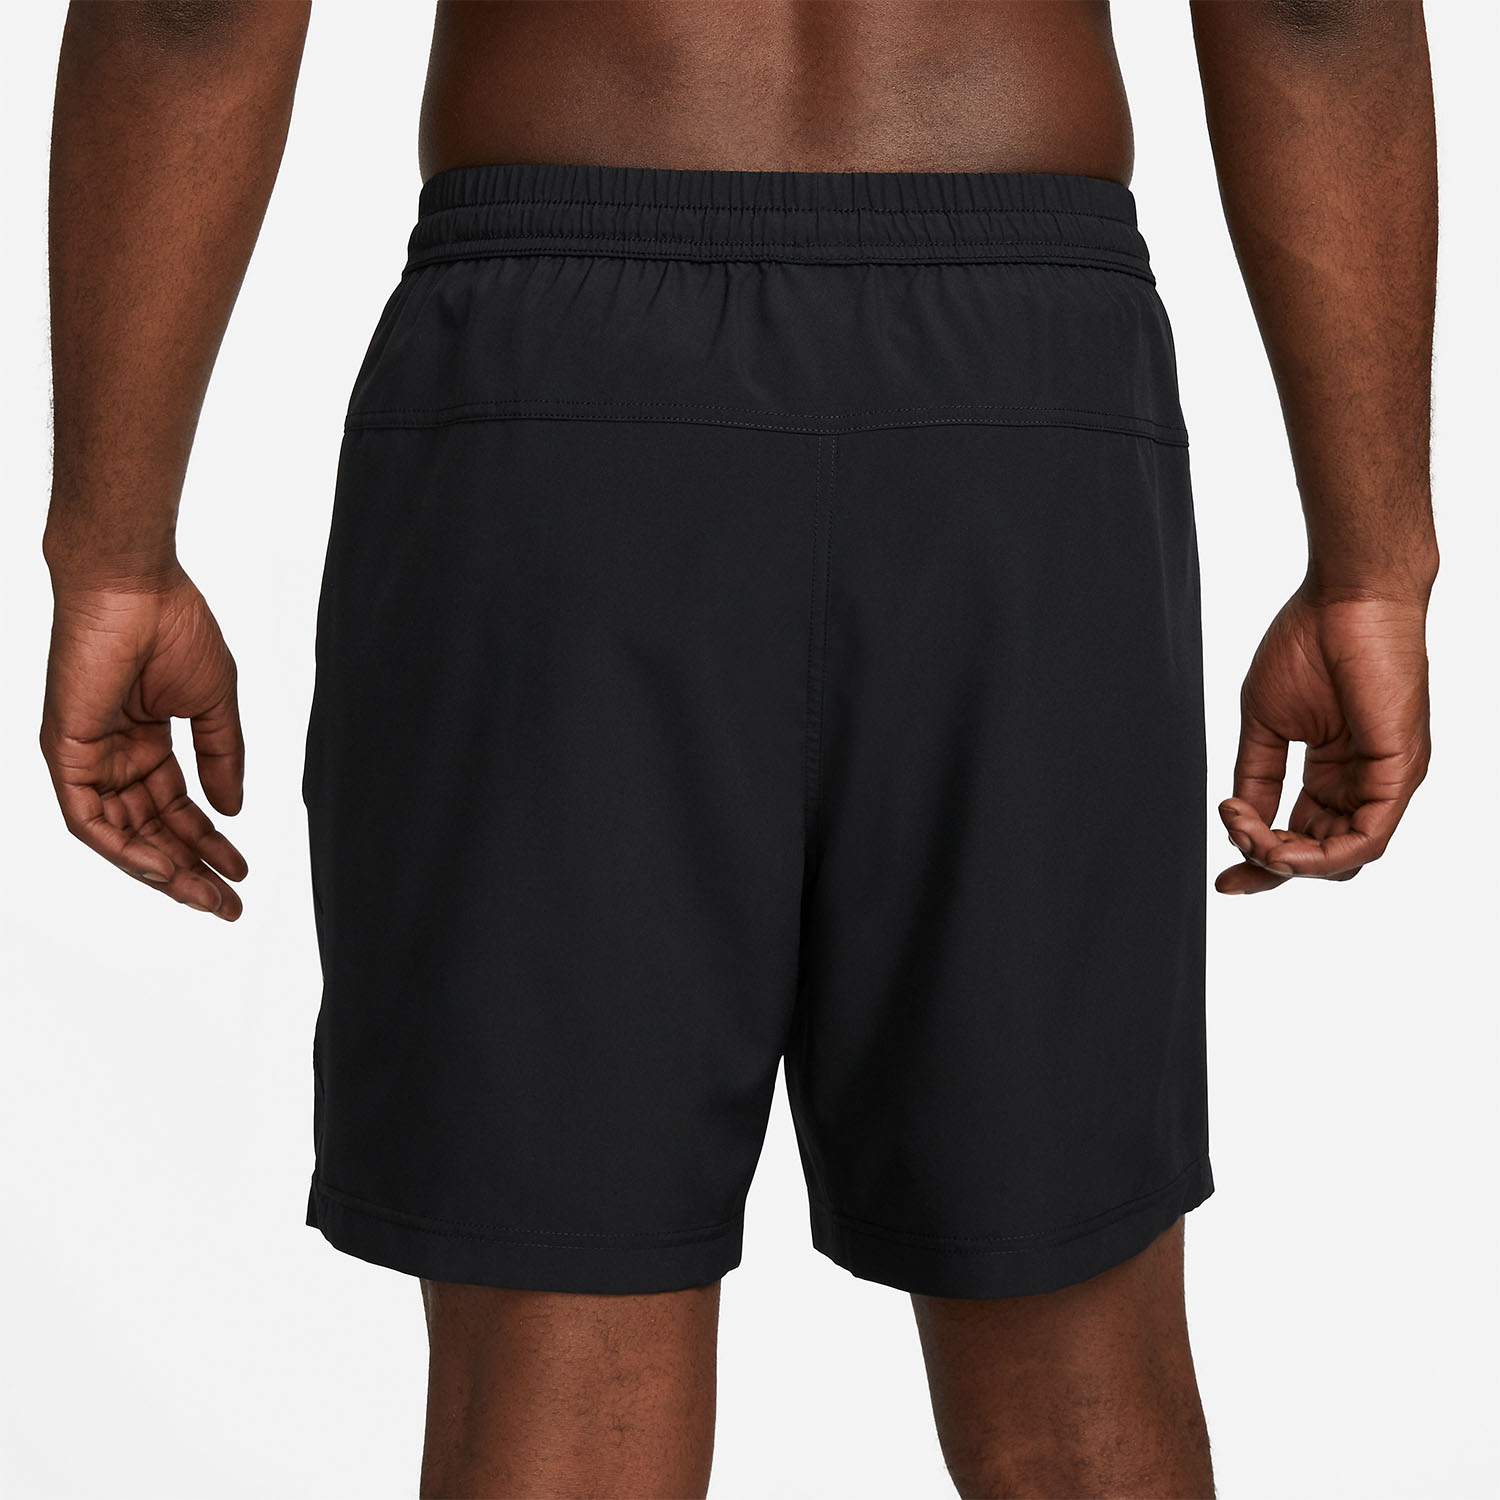 Nike Dri-FIT Knit 7in Men's Training Shorts - Black/White